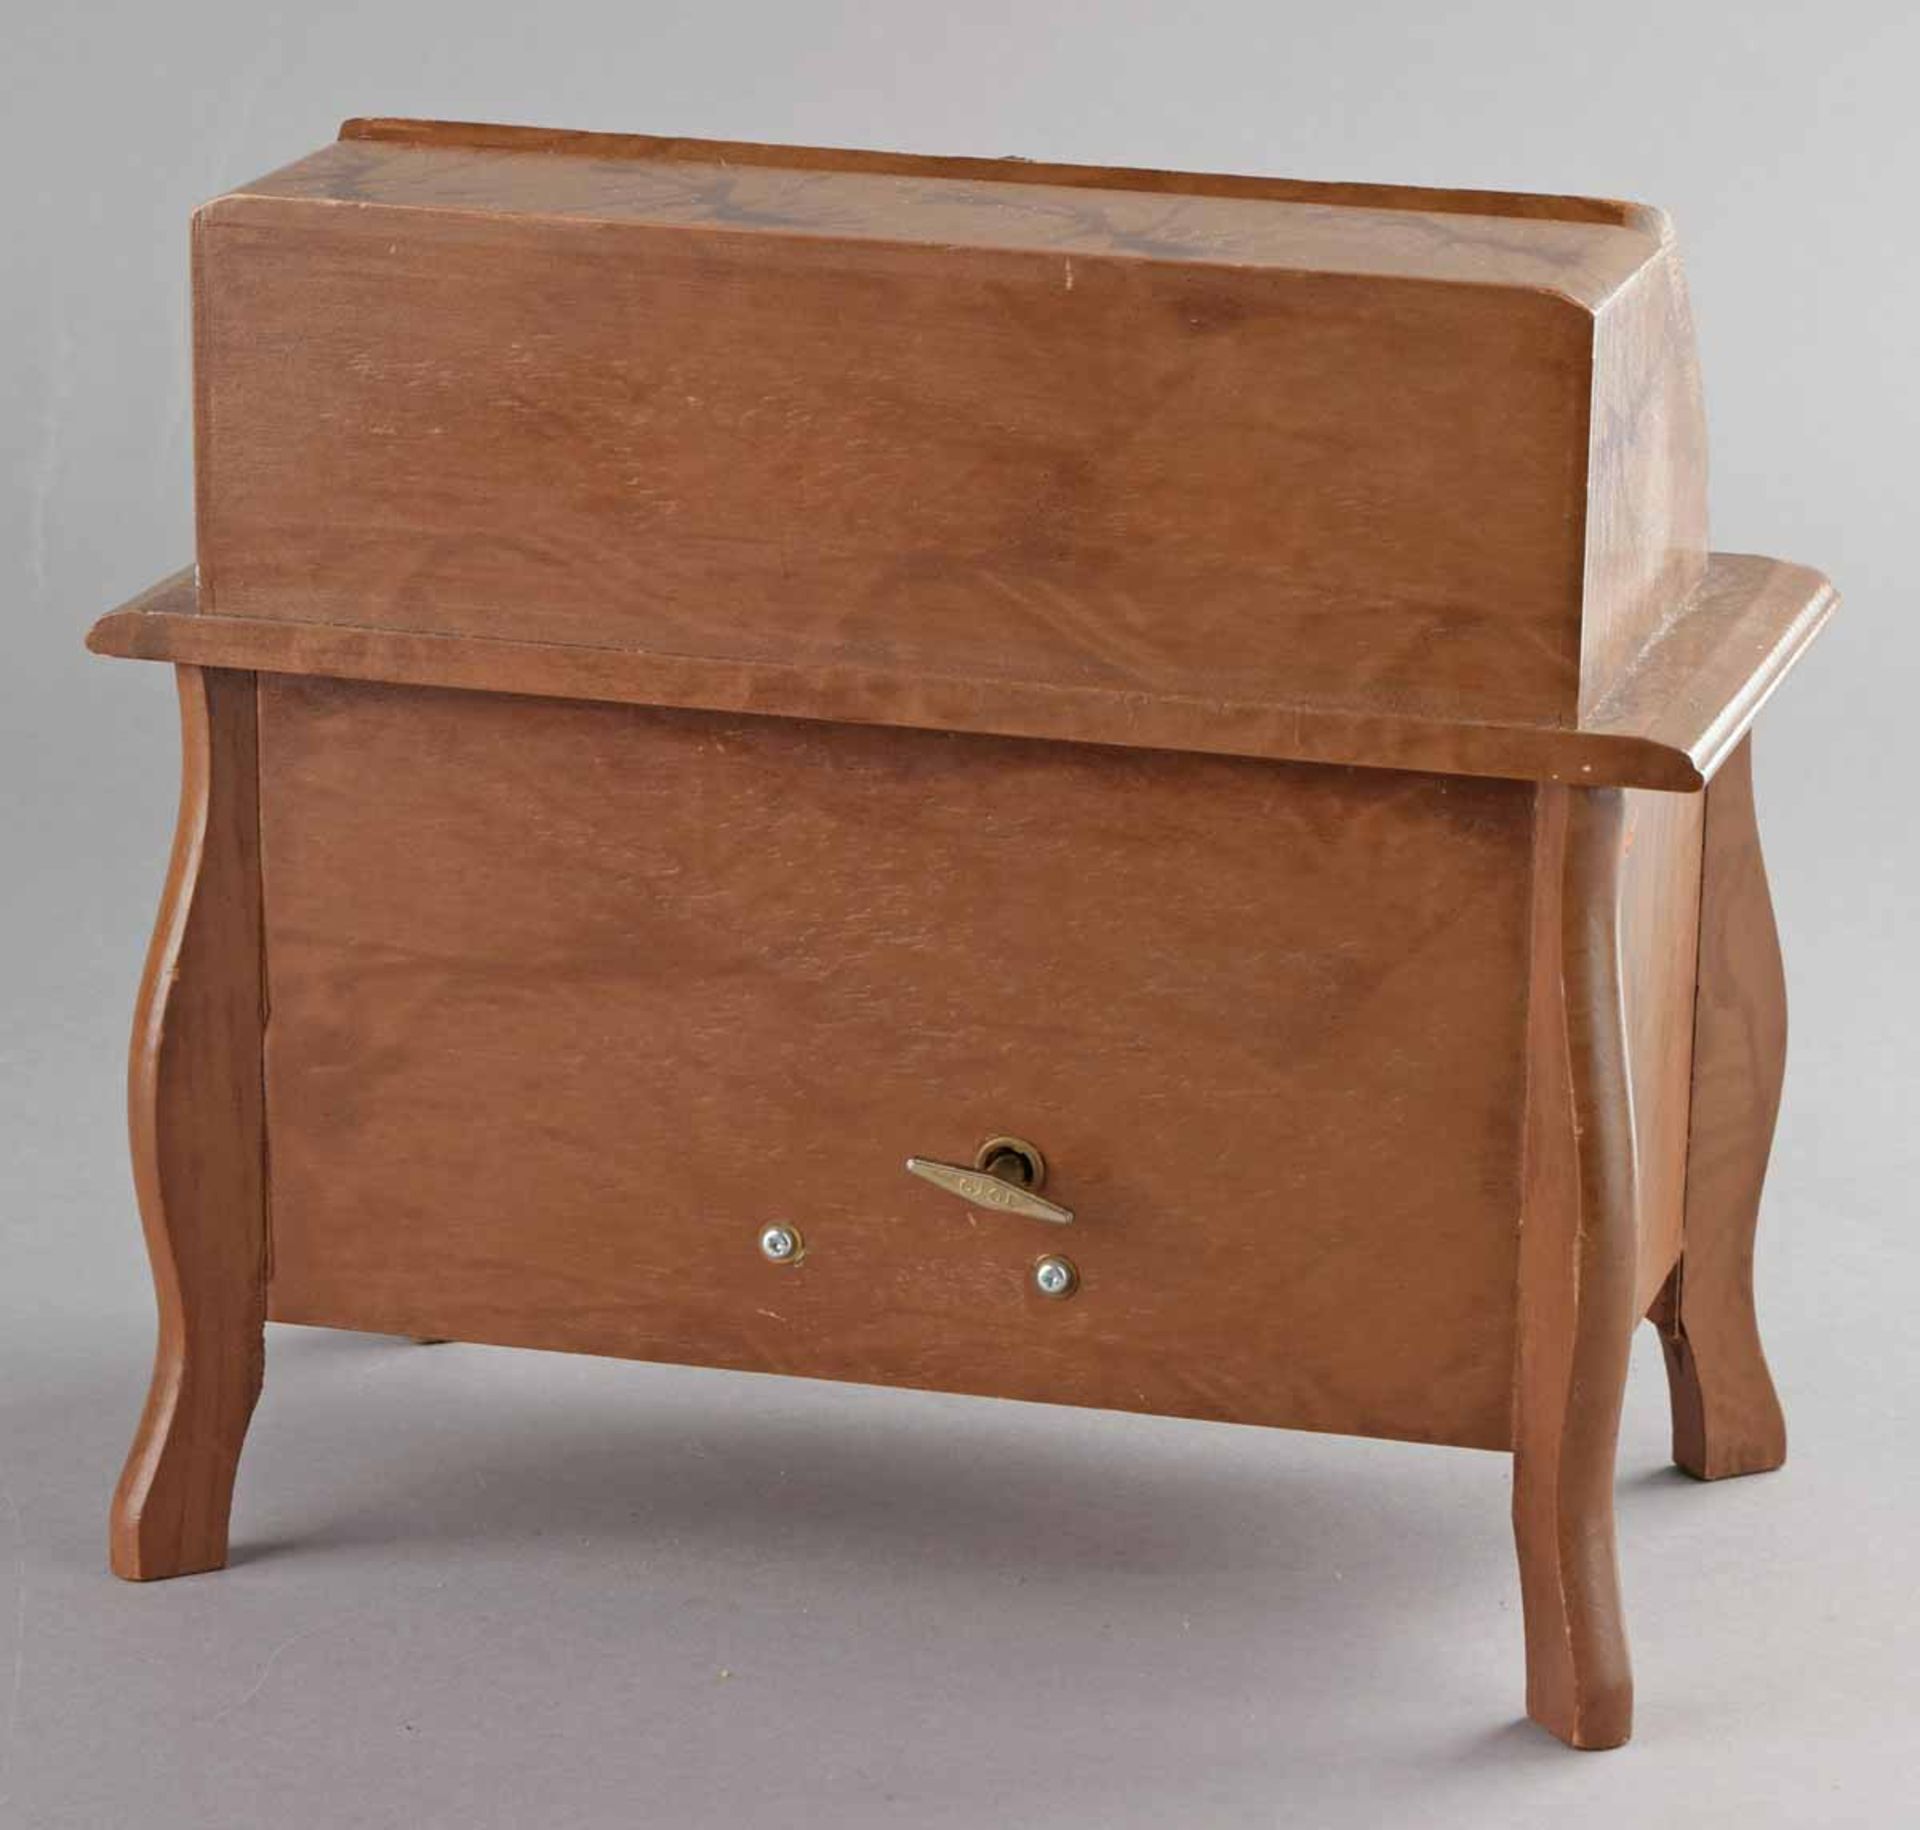 Schmuckschatulle in Form eines Pultsekretärs, zwei Schübe und Pultklappe, mit Spieluhr, innen - Bild 4 aus 4